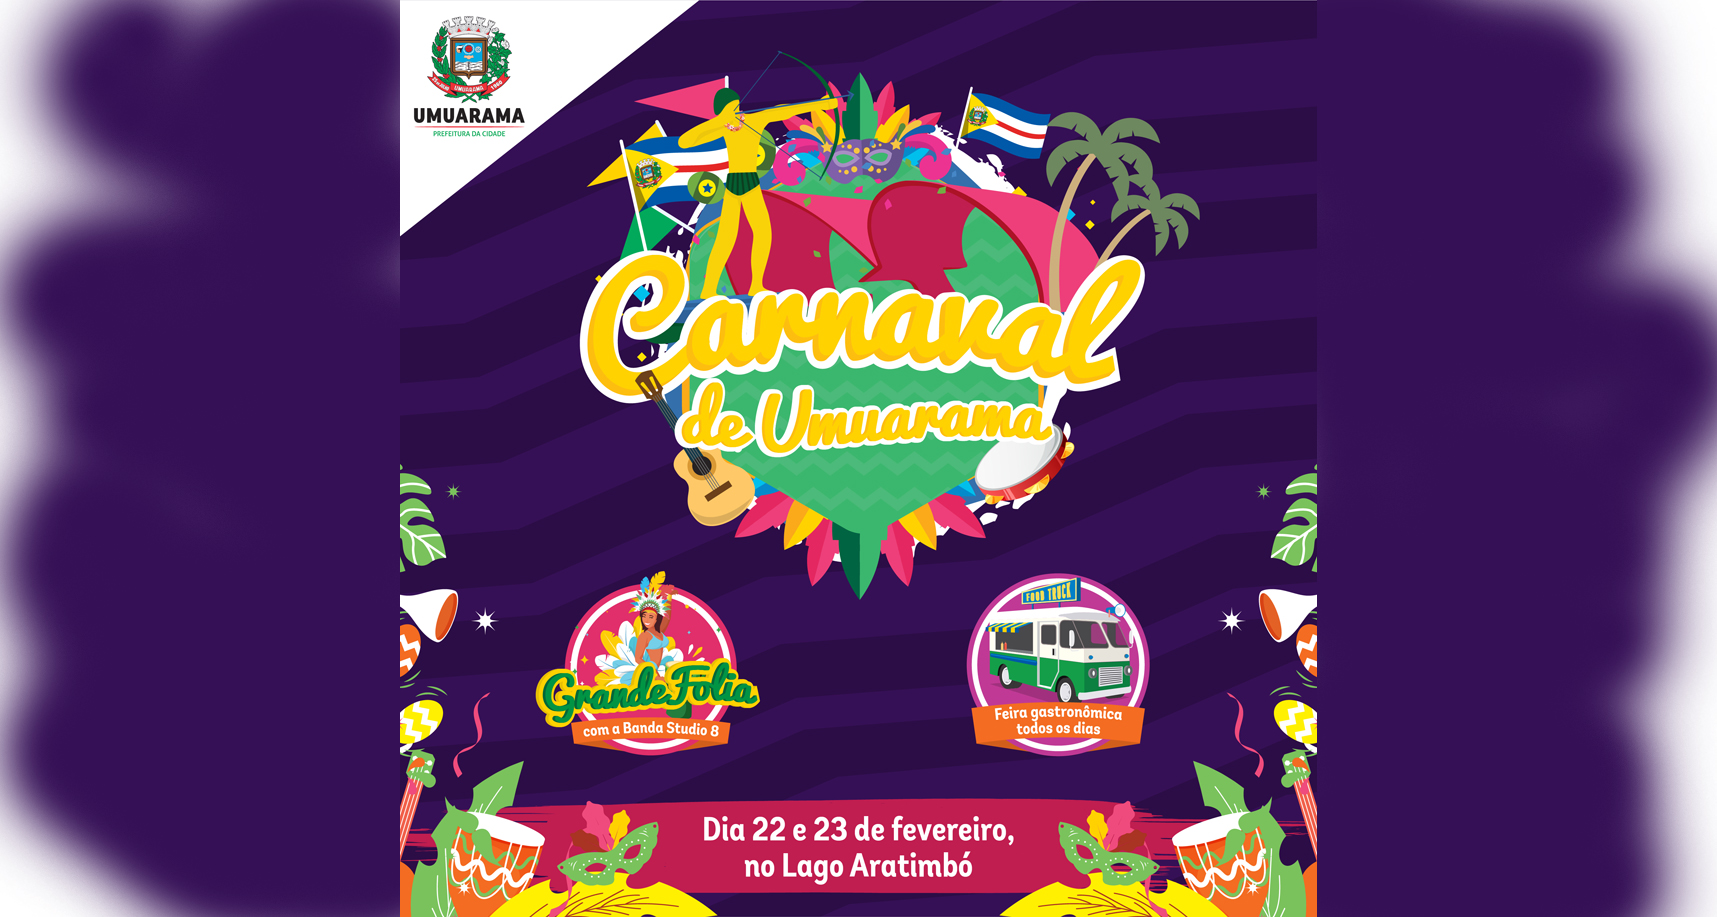 Foto da matéria Carnaval popular de Umuarama começa neste sábado, no Lago Aratimbó